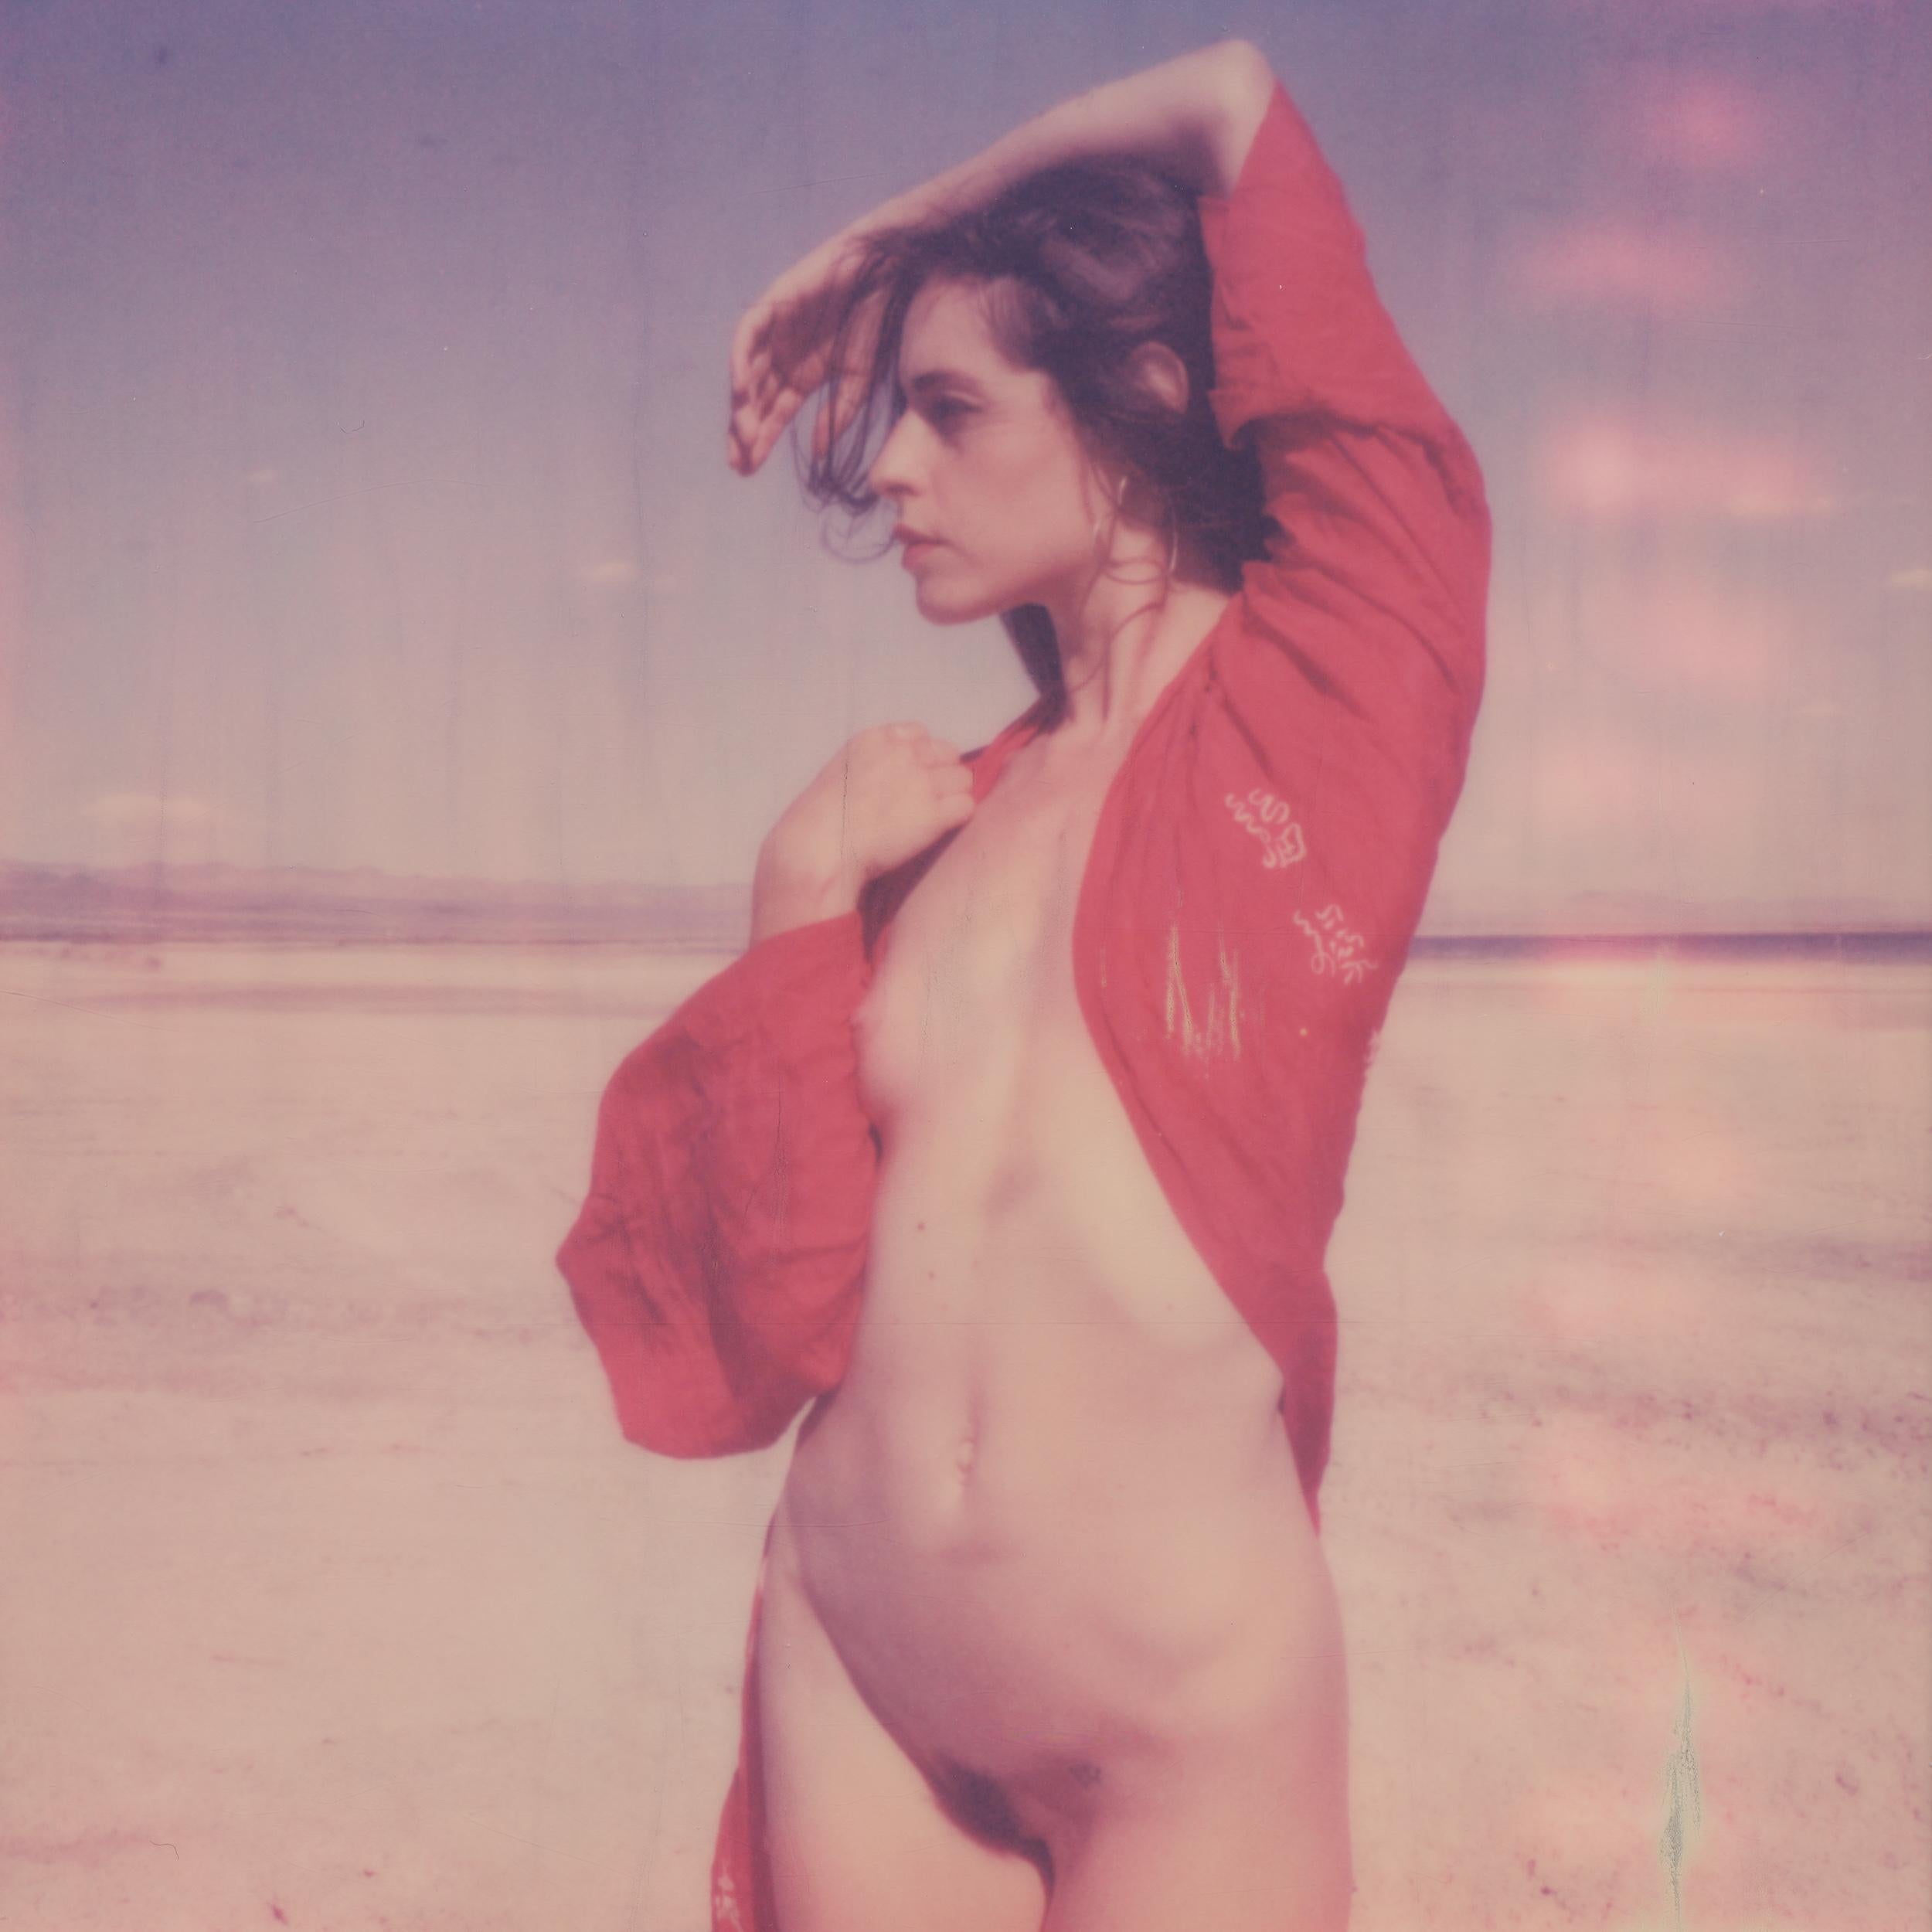 Kirsten Thys van den Audenaerde Nude Photograph - Red - Contemporary, Polaroid, Nude, Color